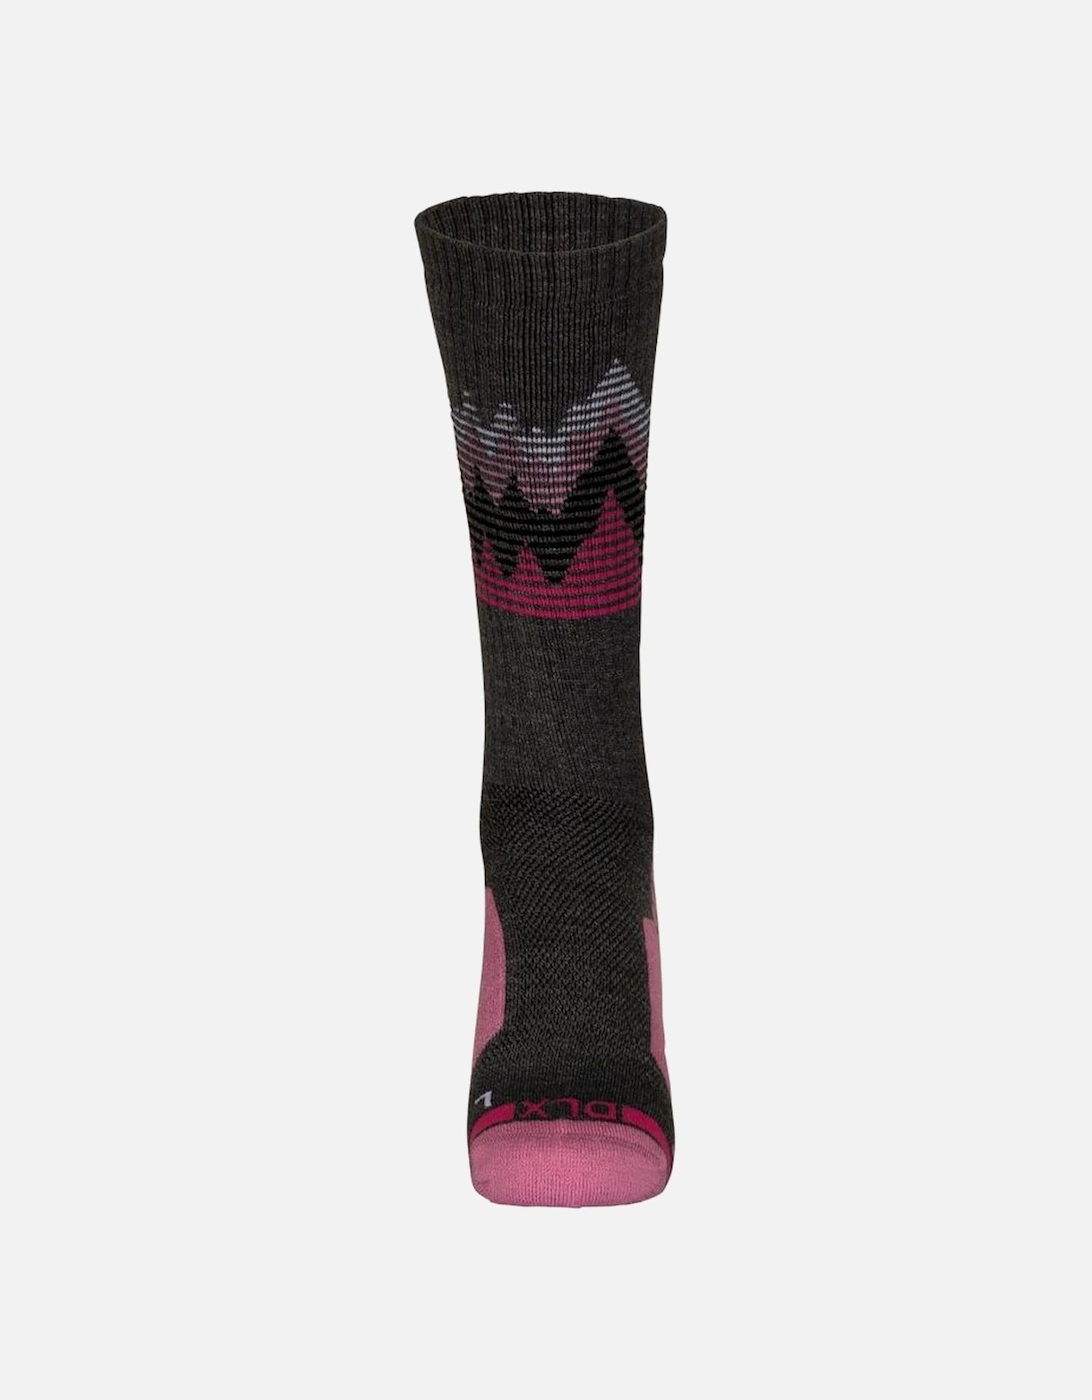 Unisex Adult Hilliard DLX Trekking Socks, 6 of 5